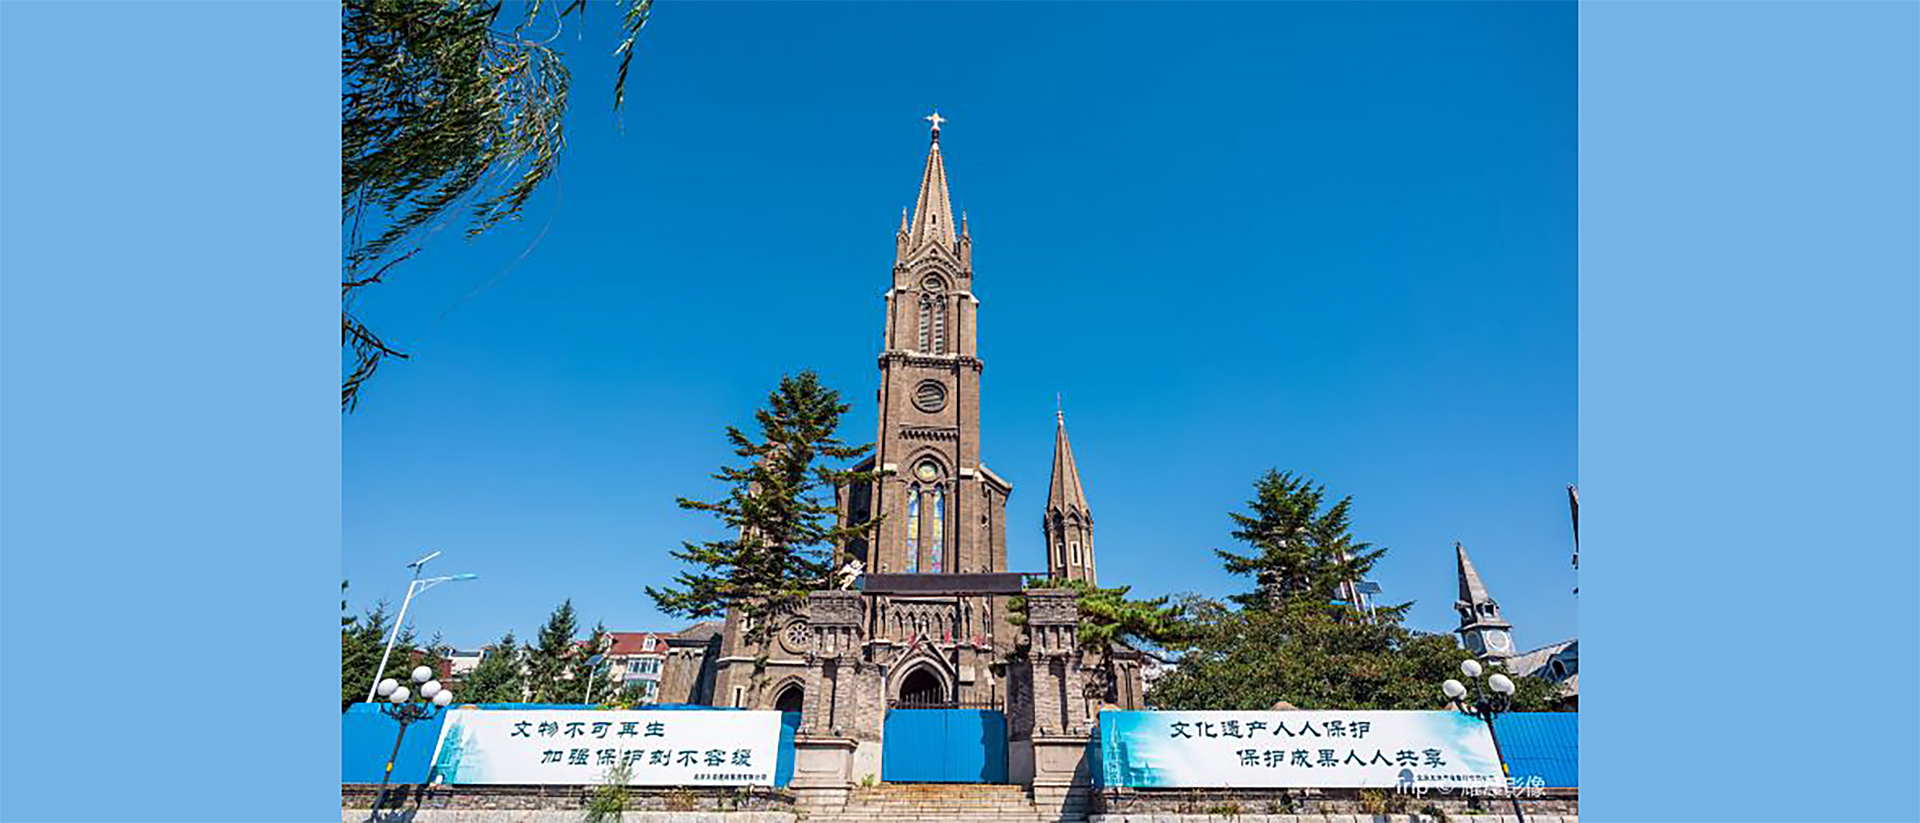 La cathédrale de Siping, nord-est de Pékin, où siégeait clandestinement Mgr André Han Jingtao depuis 1986 | trip.com